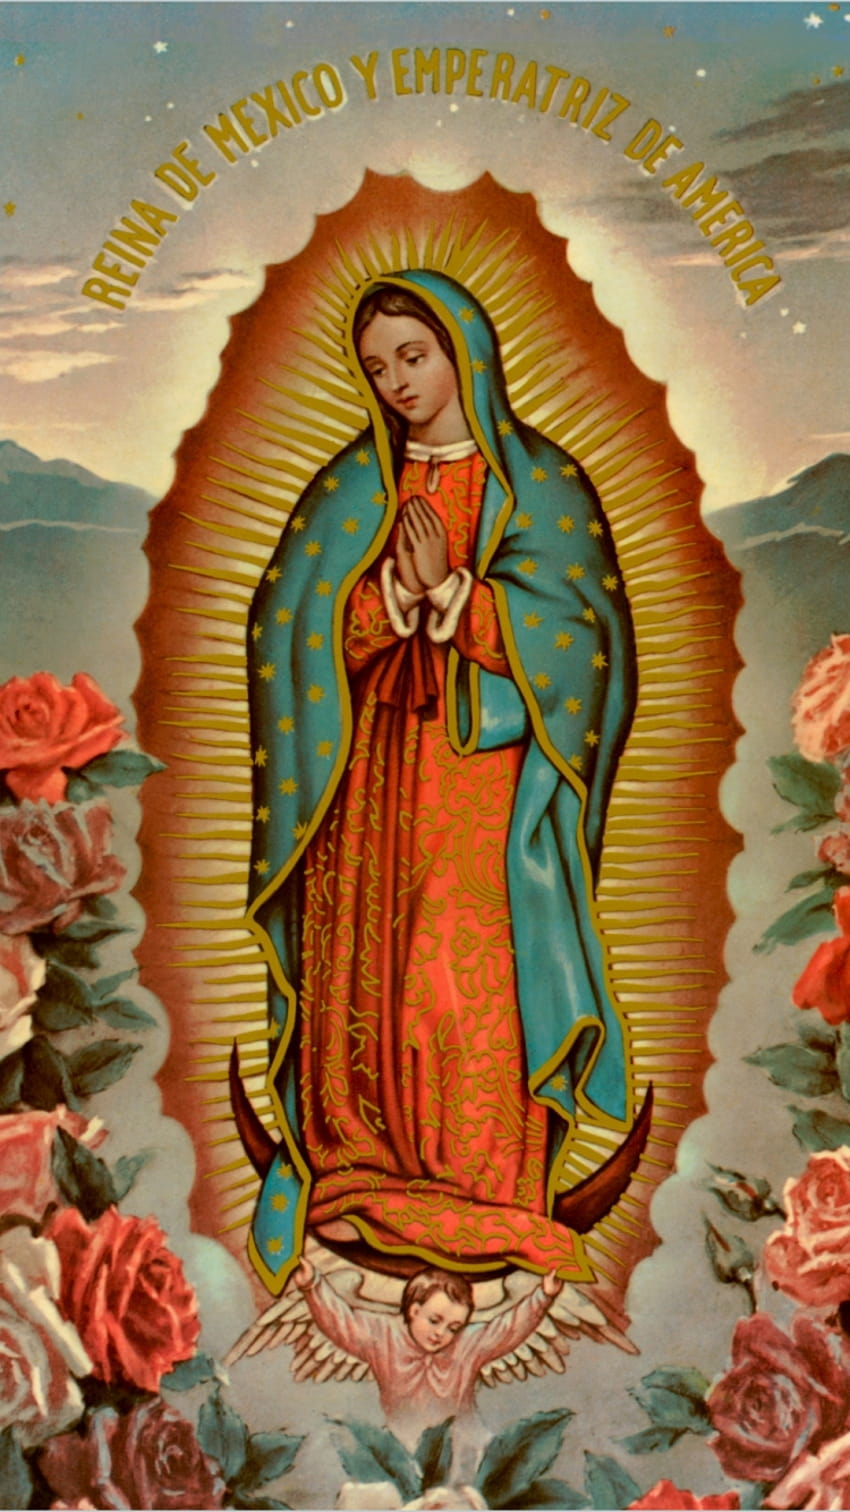 La Virgen De Guadalupe publicado por Michelle Mercado, guadalupe iphone fondo de pantalla del teléfono